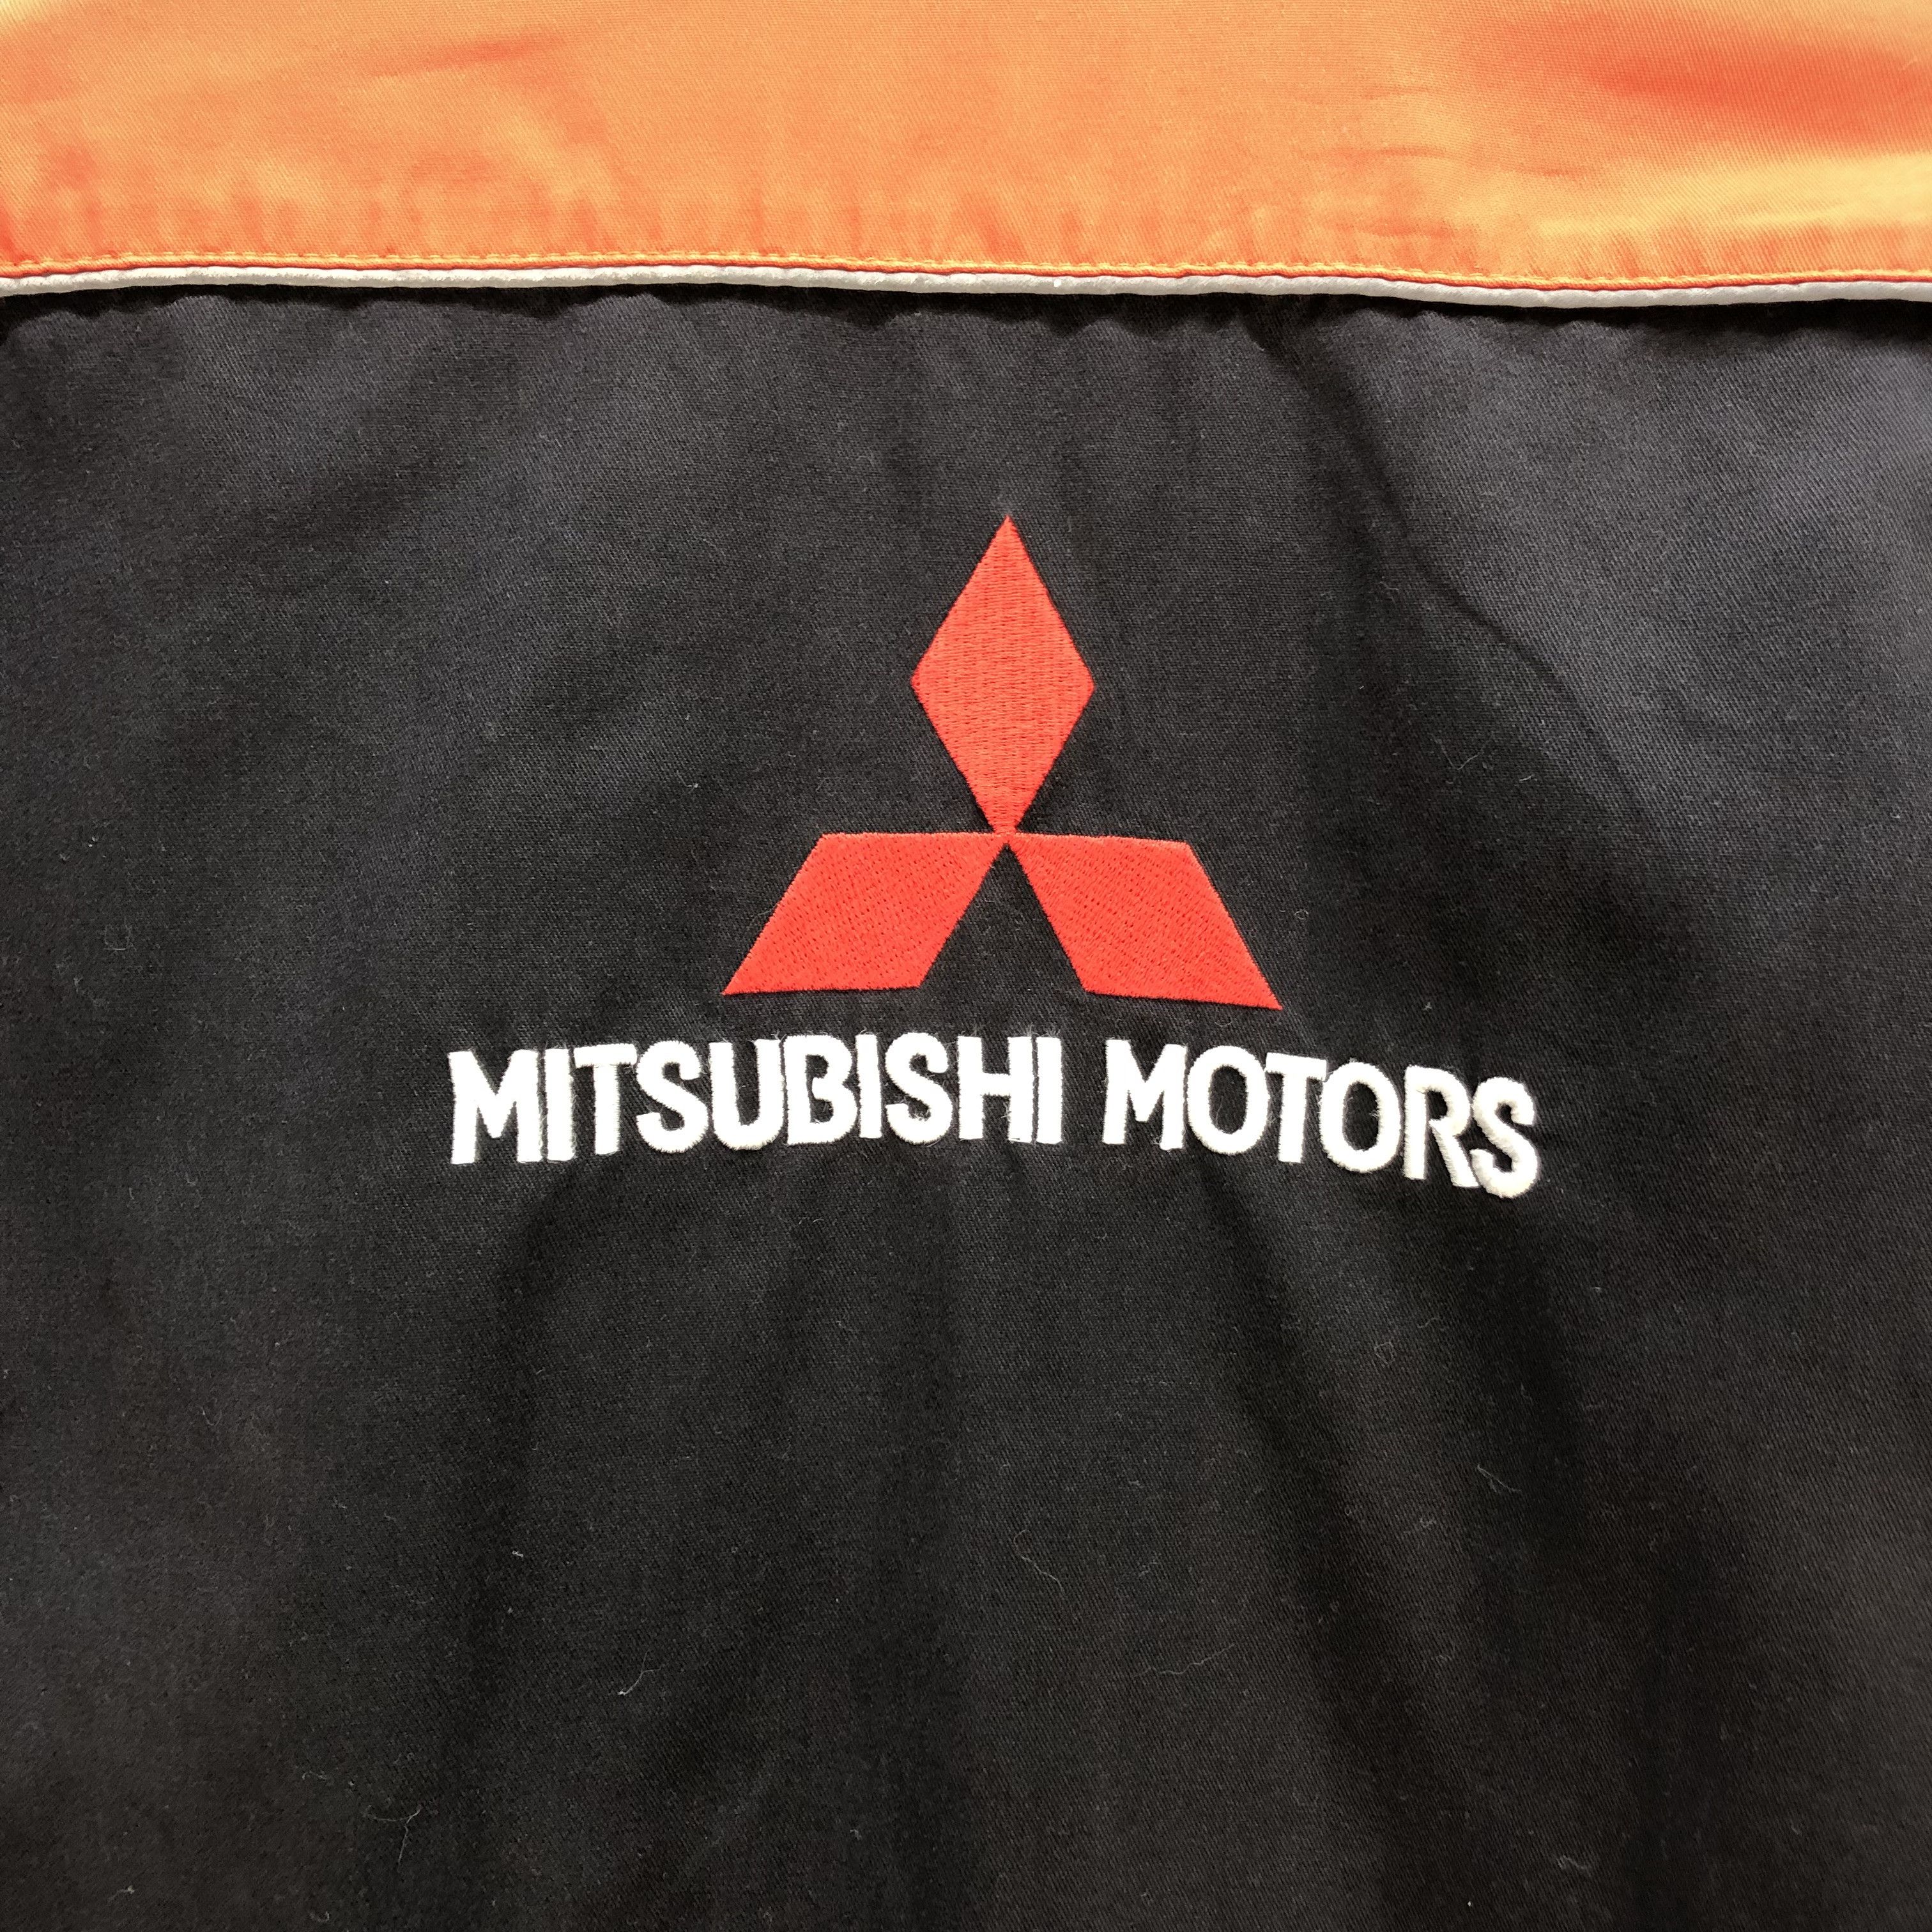 Sports Specialties - MITSUBISHI MOTORS COVERALLS #7133-111 - 18